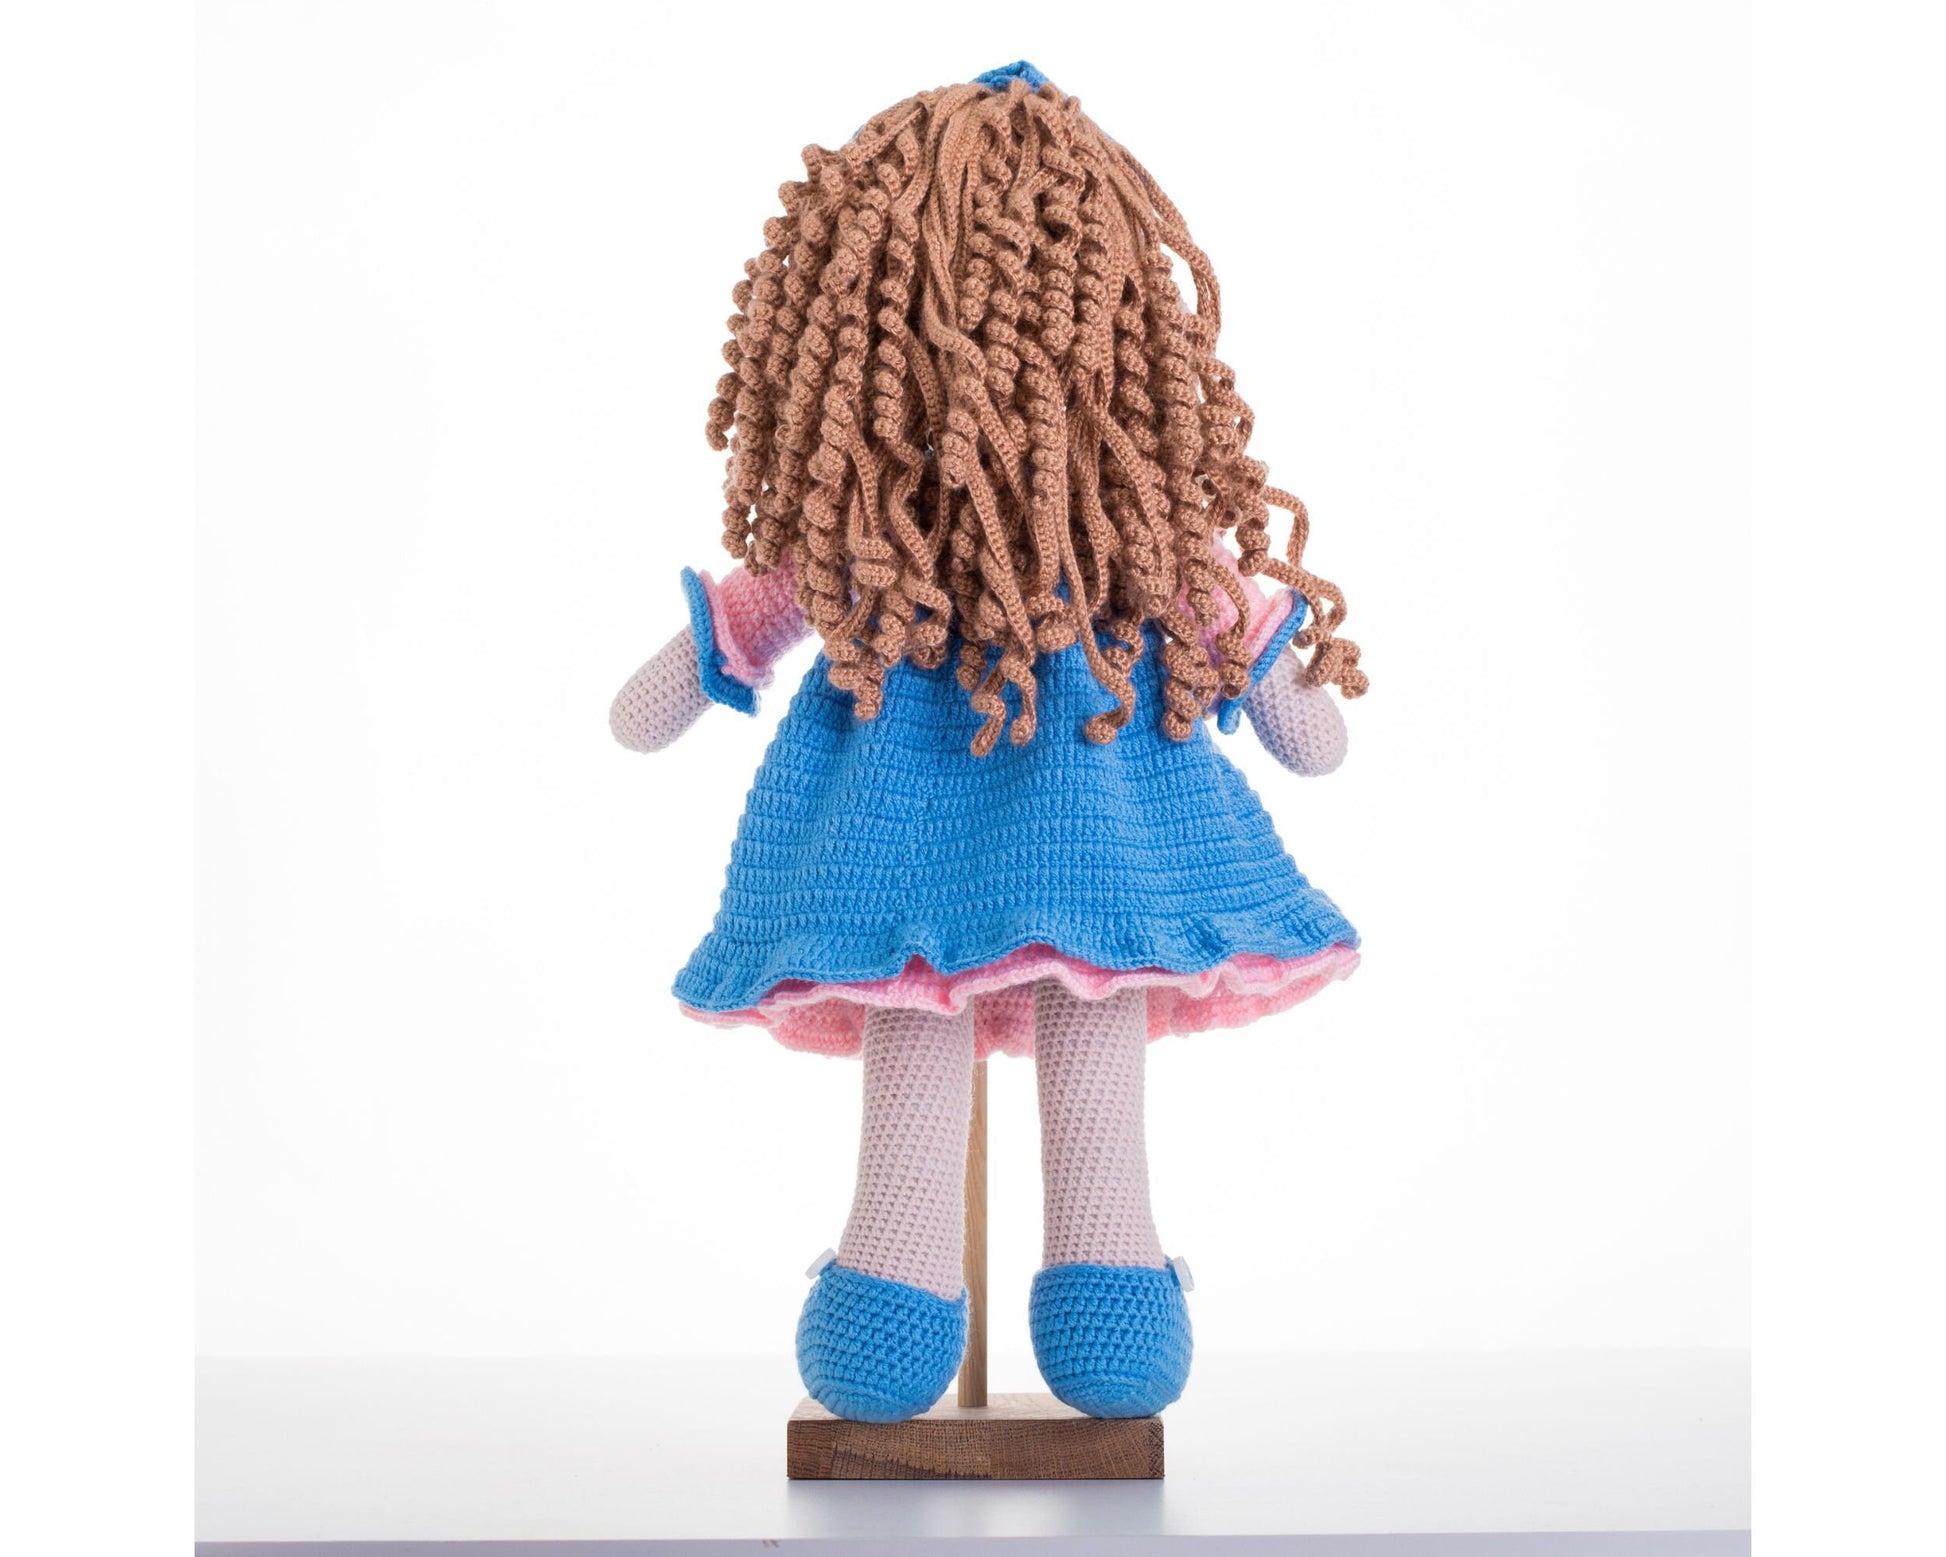 Crochet Doll in Blue Dress, Amigurumi Doll, Daughter Gift, Granddaughter Gift, Christmas Amigurumi, Handmade Doll, Knitted Dolls, Soft Doll